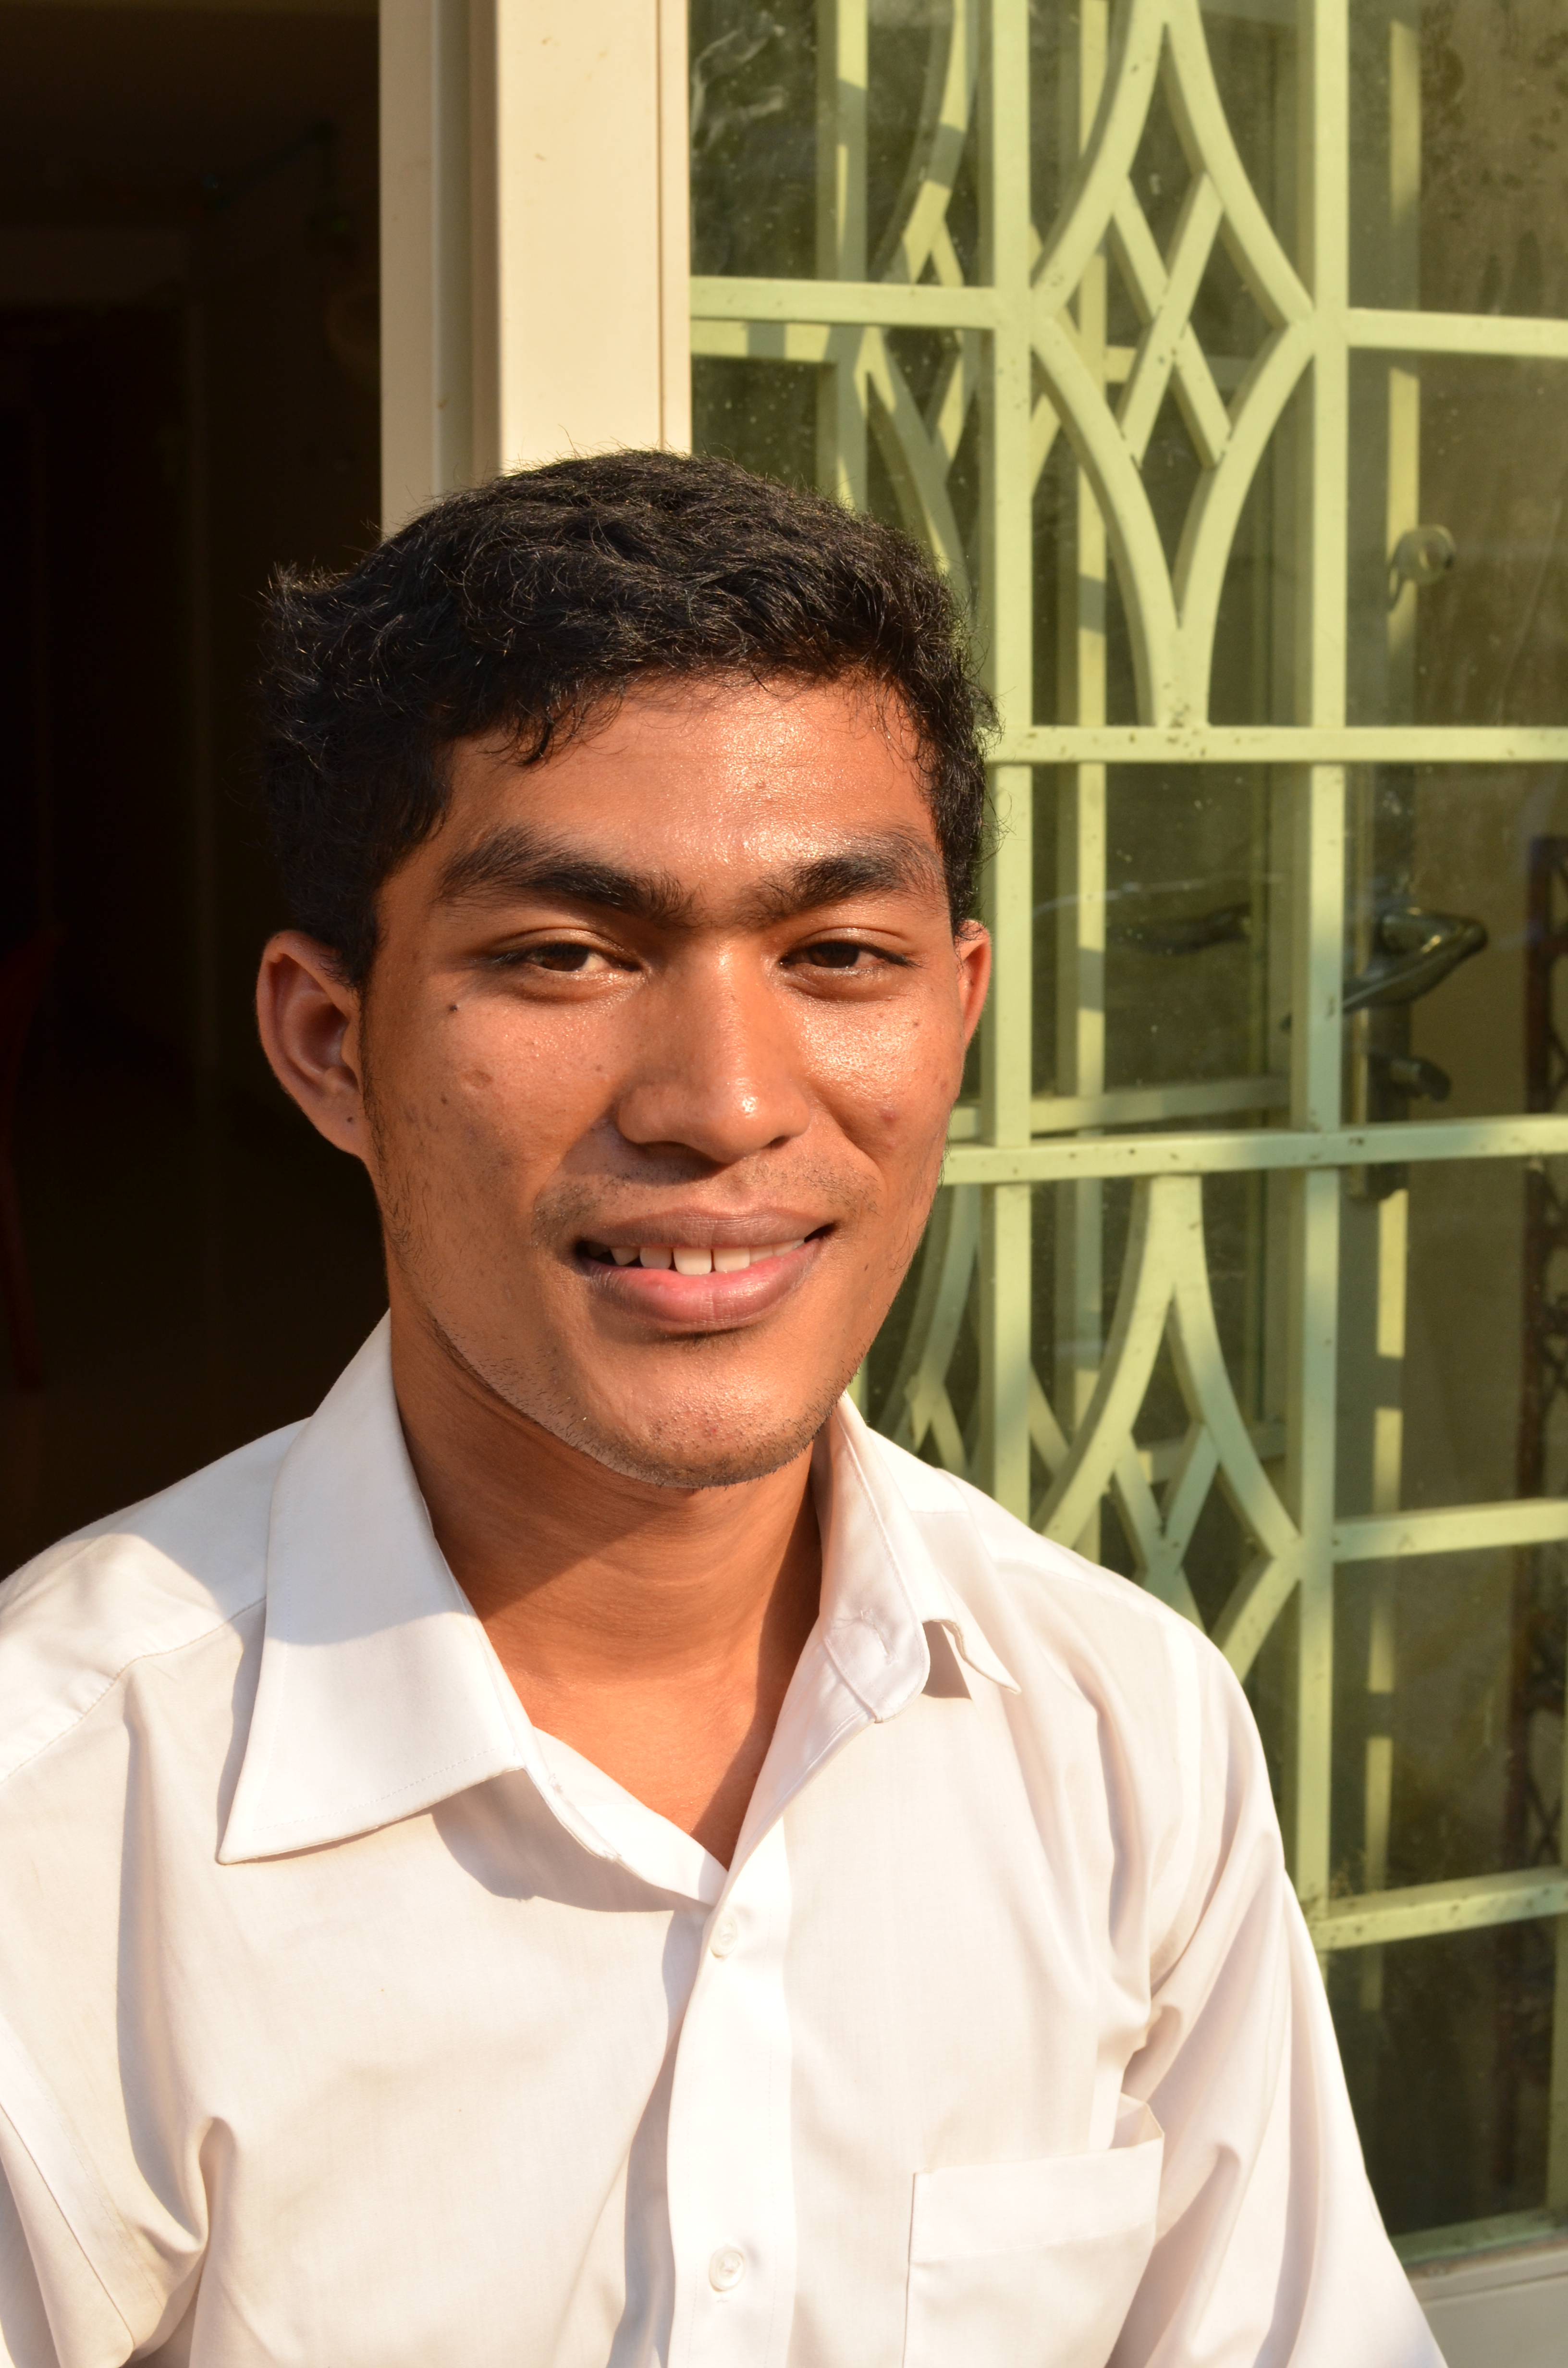 Pich Chantreas liv förändrades när han kom i kontakt med den kristna tron. Idag studerar han till läkare och vill påverka samhällsstrukturerna i Kambodja. Foto: Joanna Lnidén-Montes